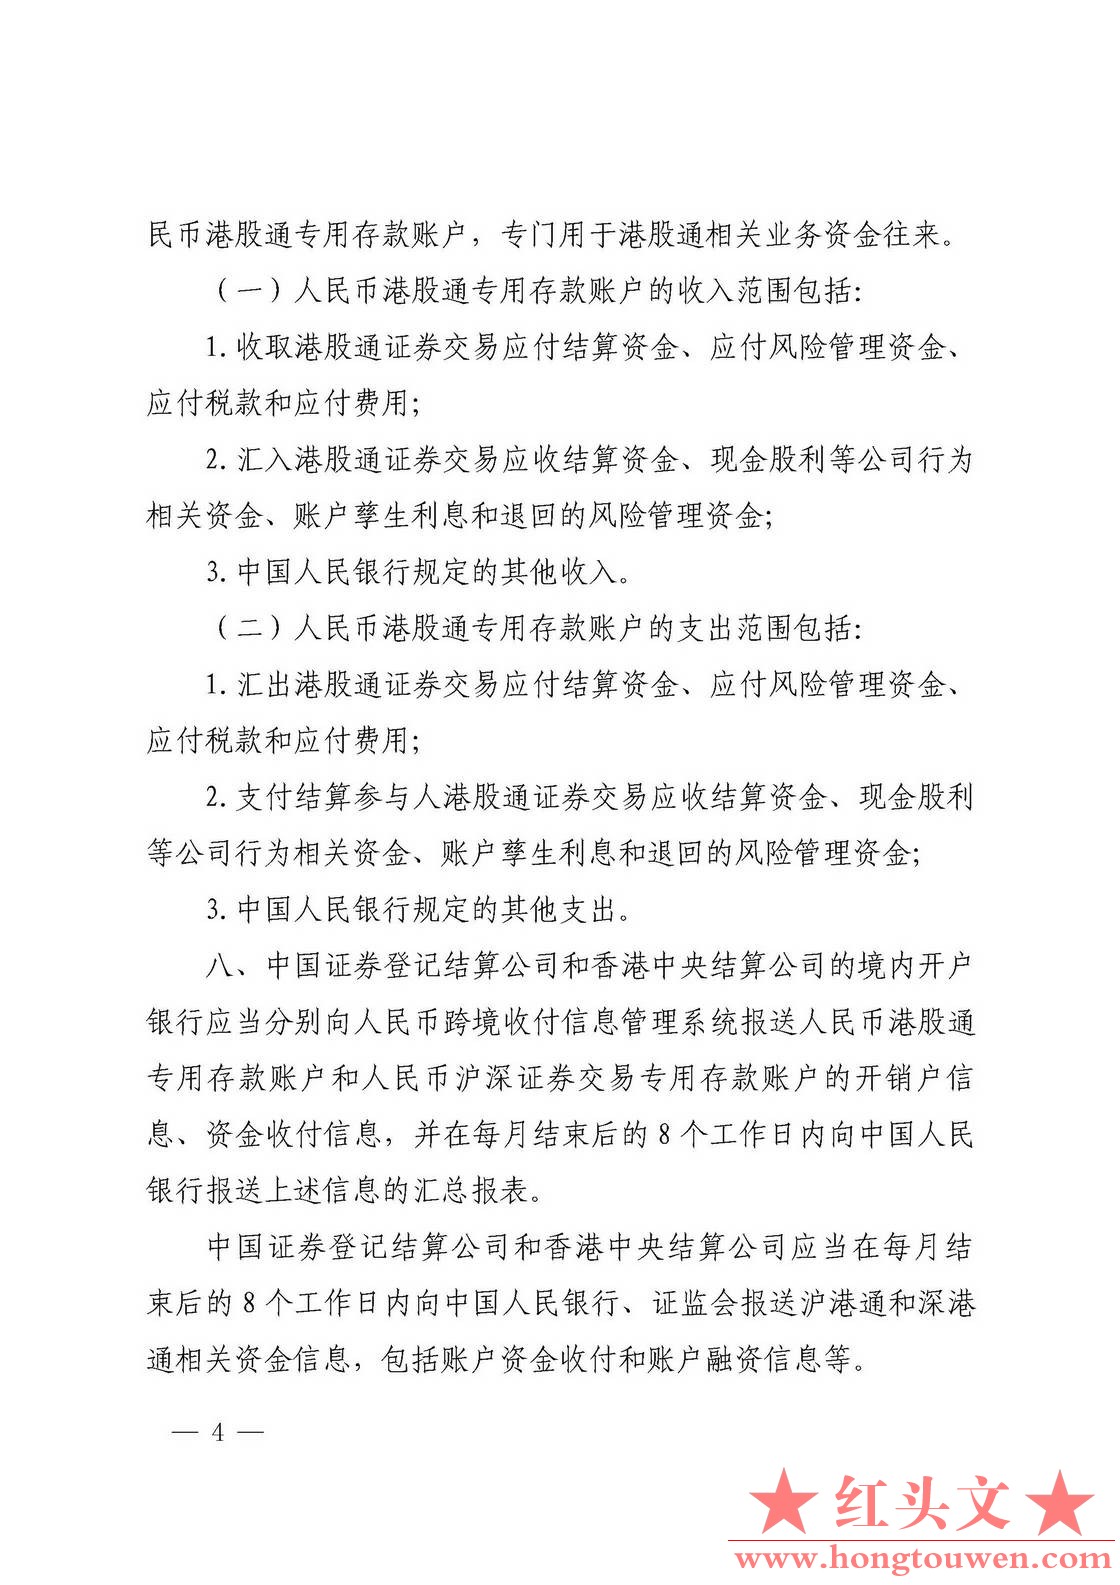 银发[2016]282号-中国人民银行 中国证券监督管理委员会关于内地和香港股票市场交易互.jpg